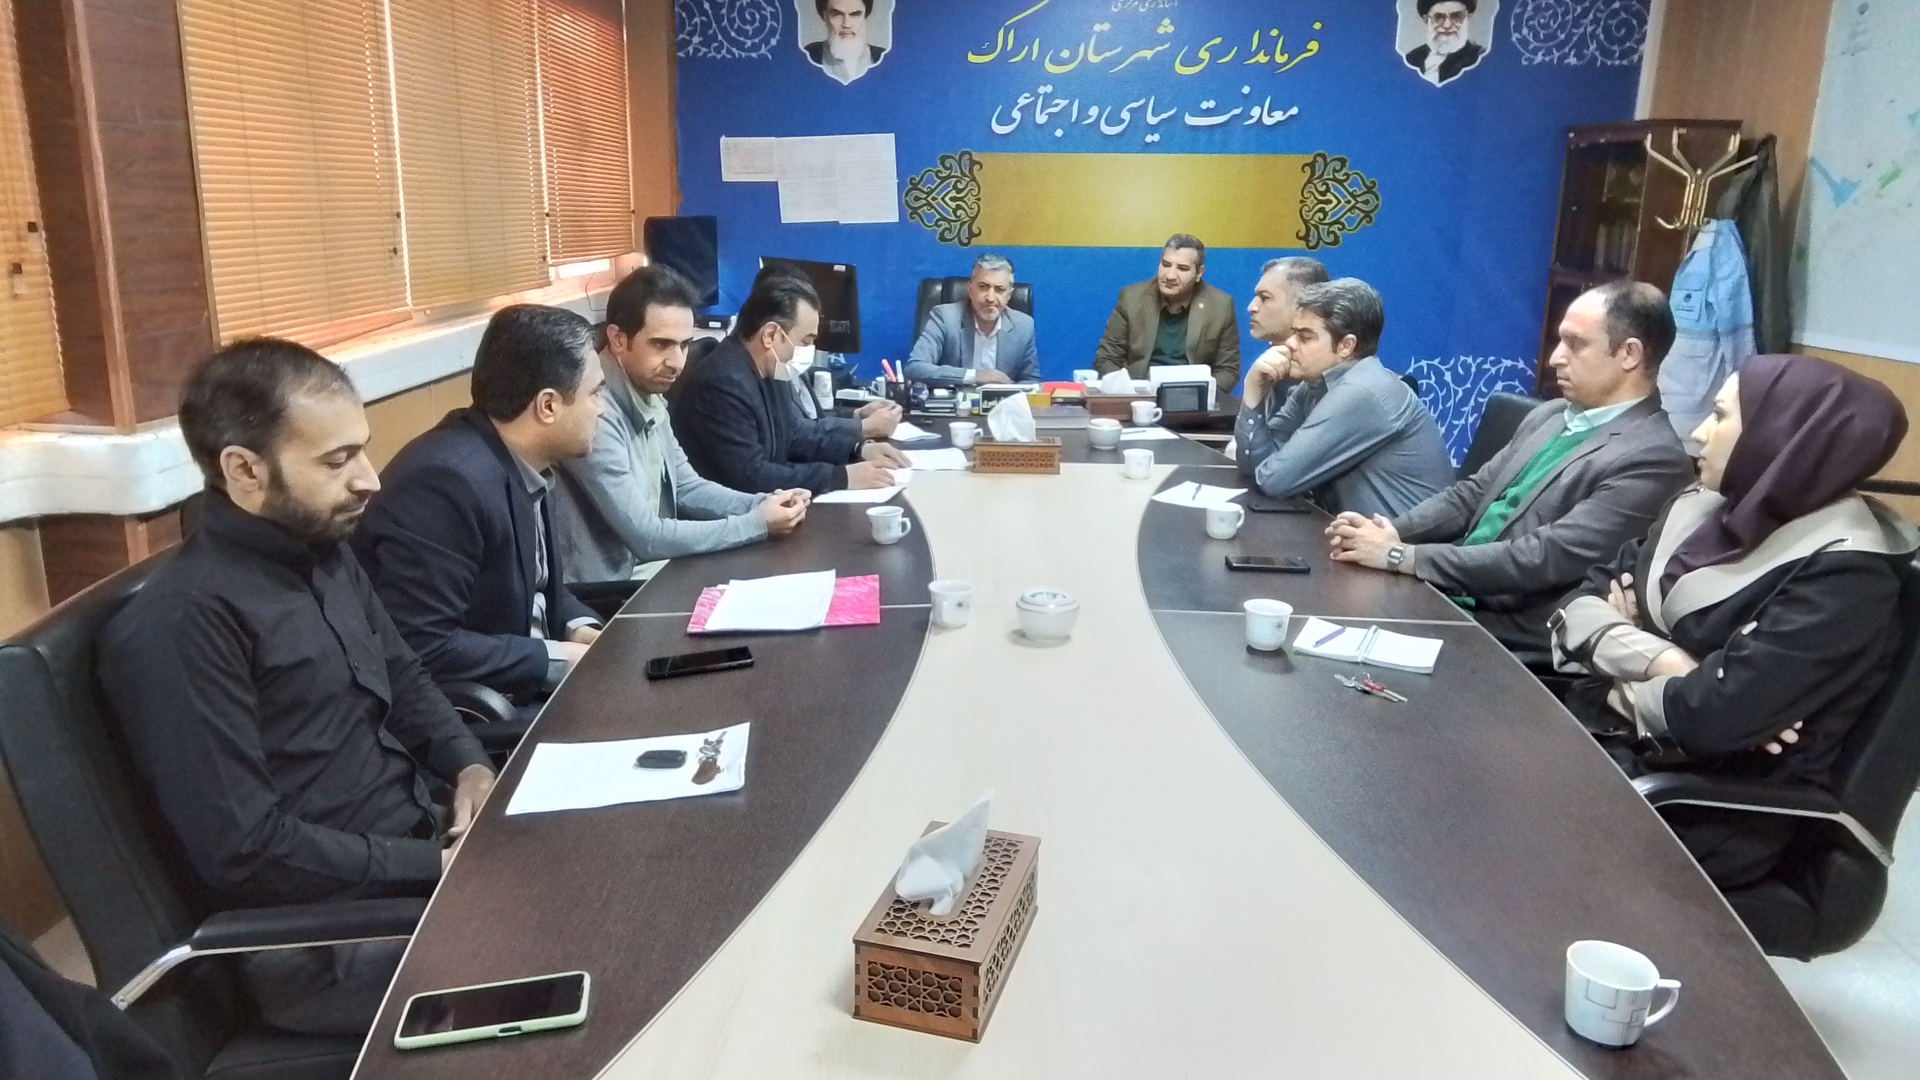 جلسه کمیته اجرایی و پشتیبانی انتخابات شهرستان اراک برگزارگردید